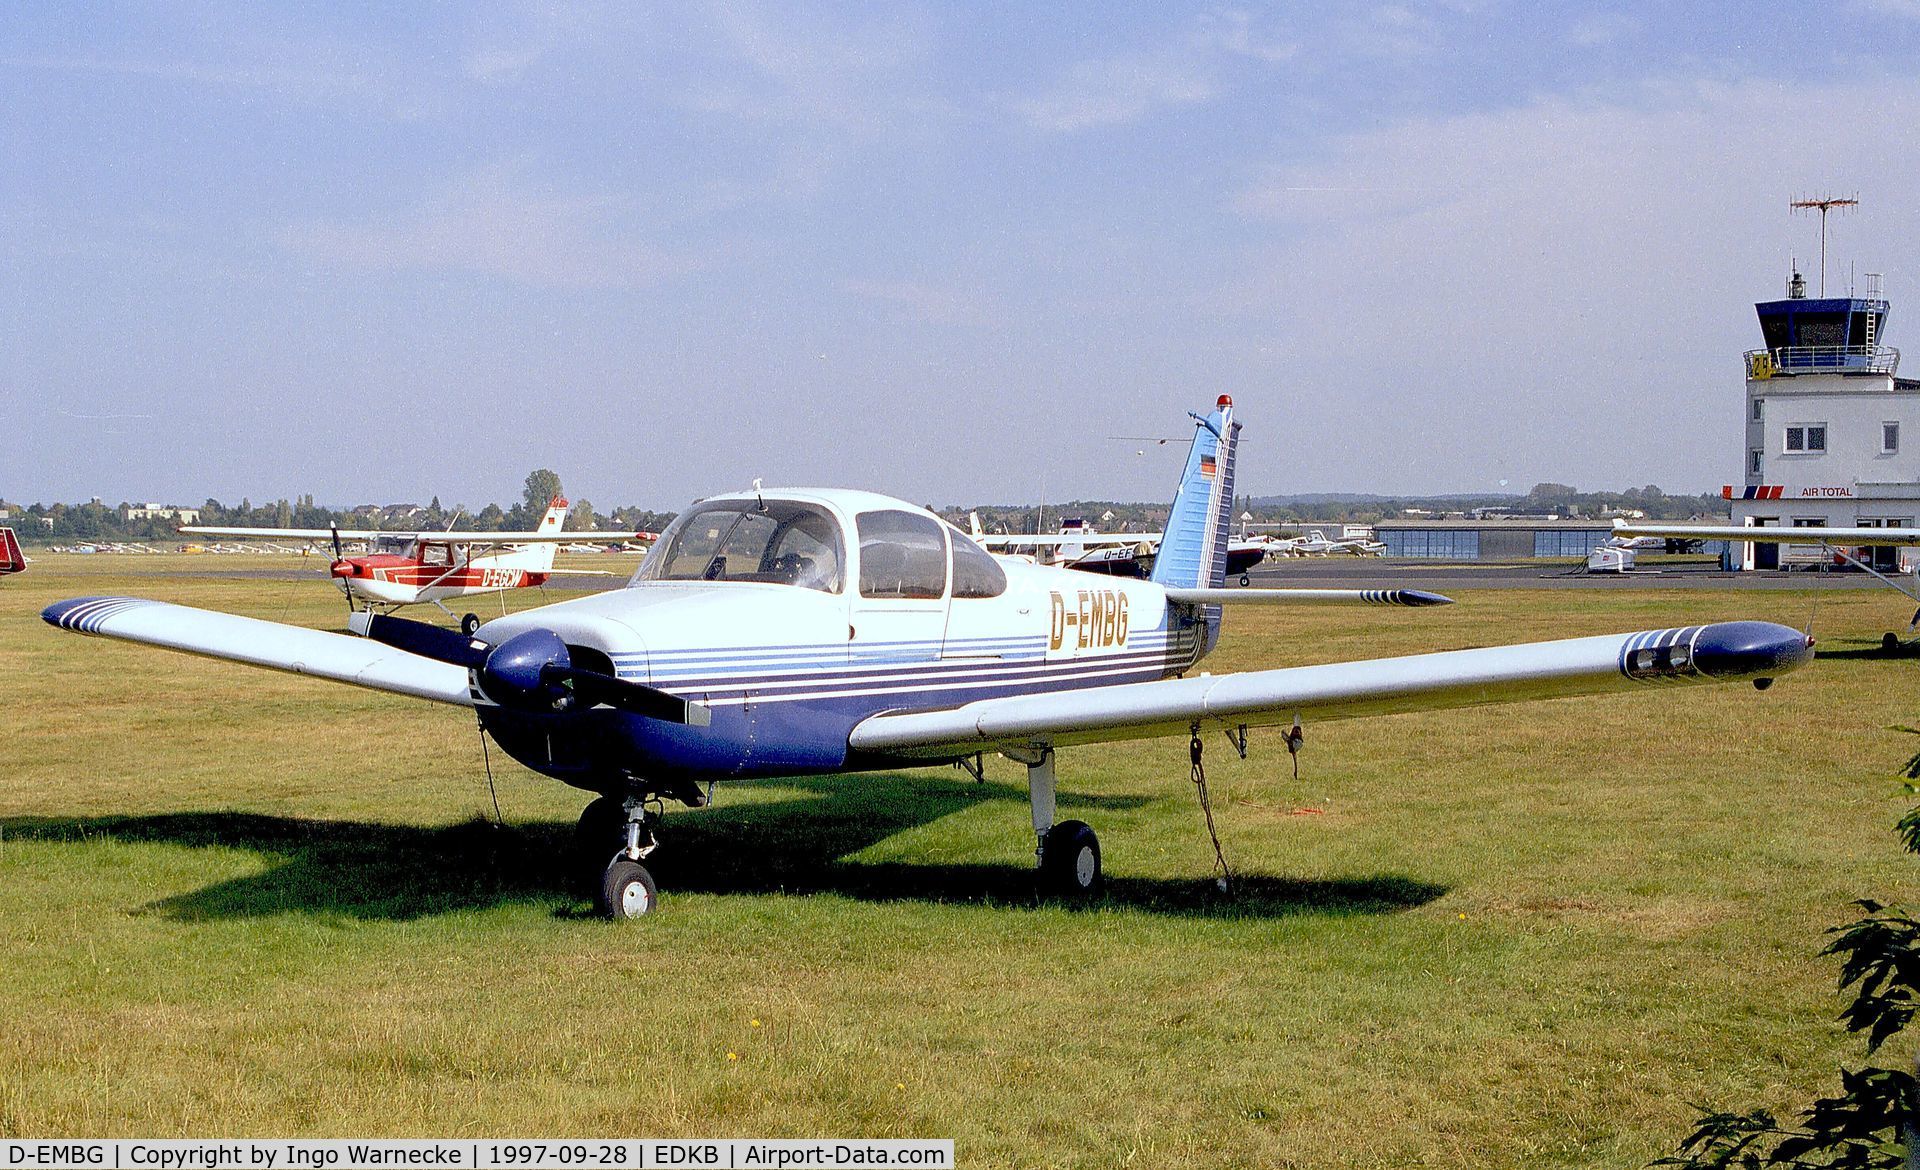 D-EMBG, Fuji FA-200-180 Aero Subaru C/N 157, Fuji FA.200-180 Aero Subaru at Bonn-Hangelar airfield